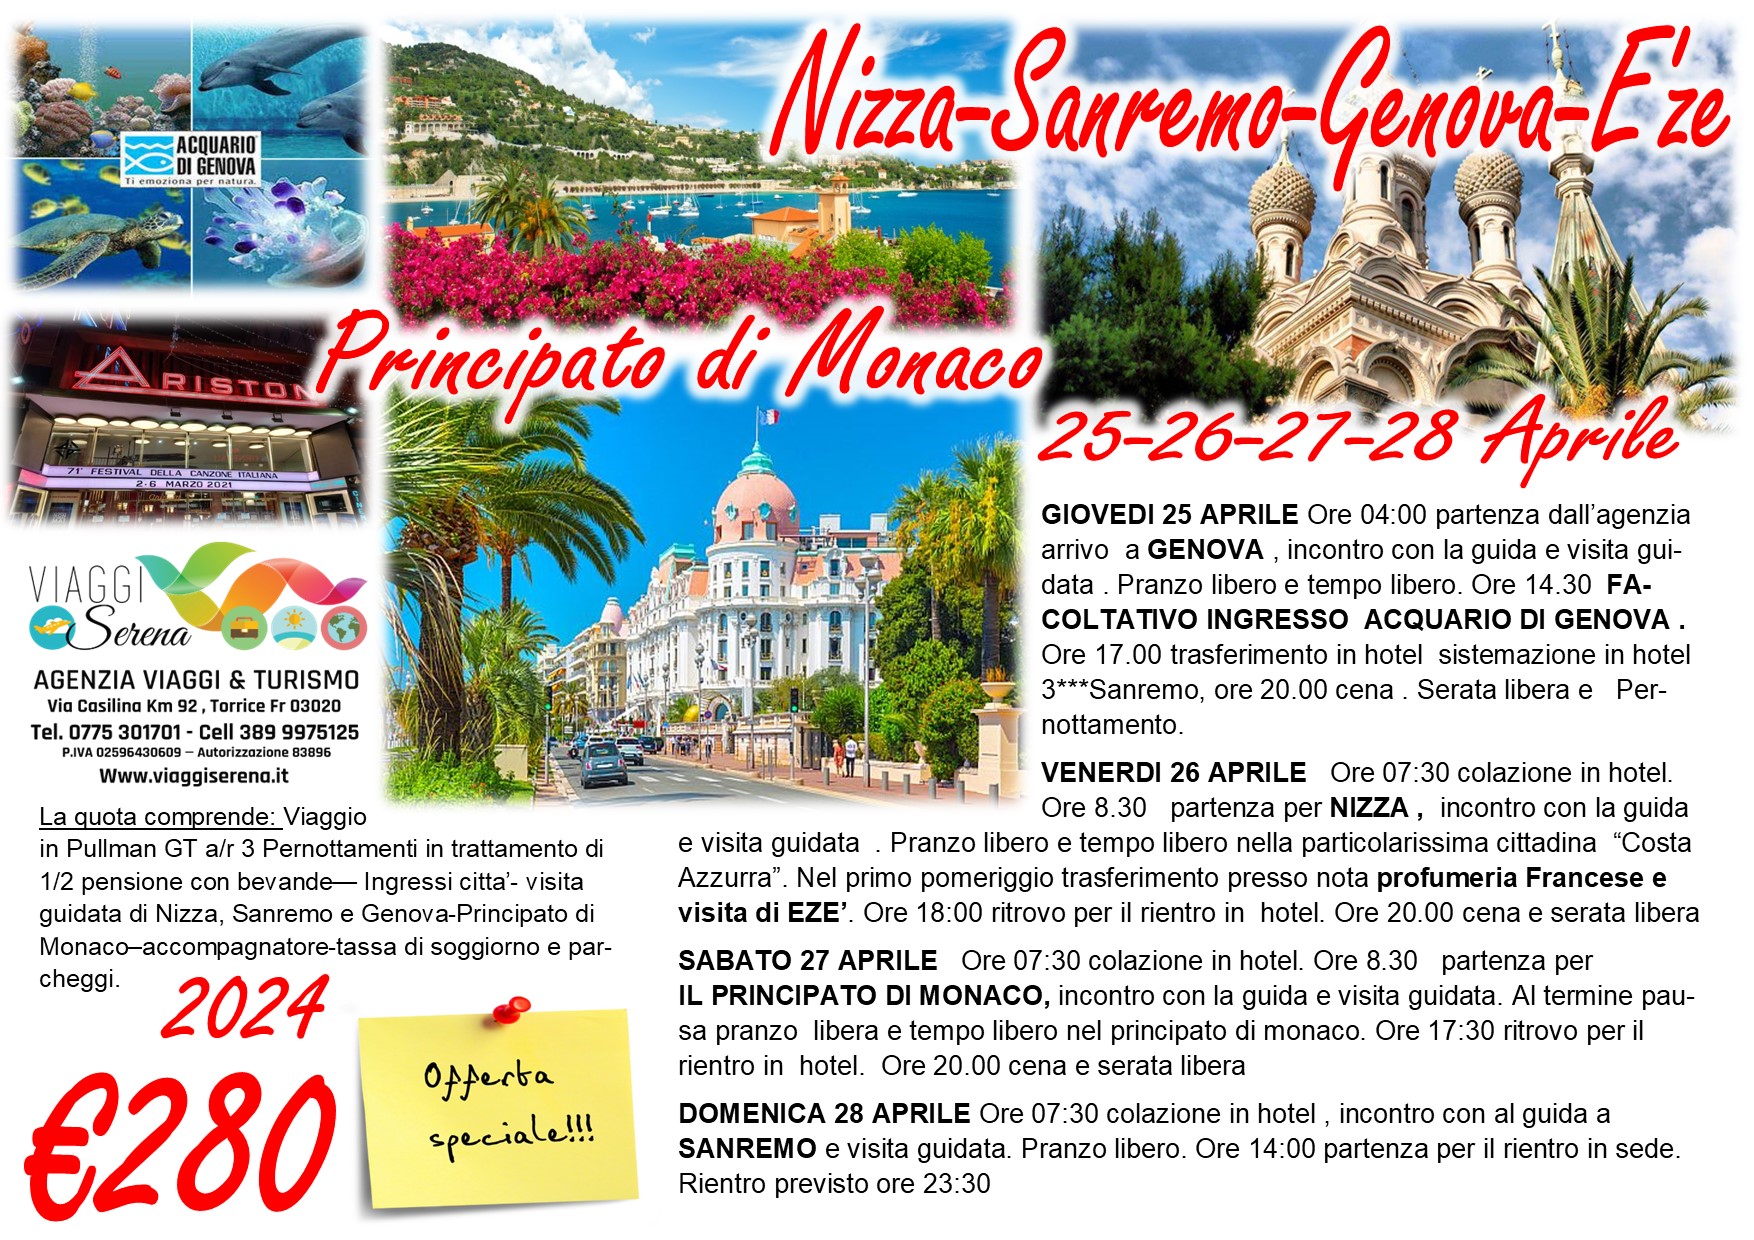 Viaggi di gruppo: Nizza, Sanremo, Genova, Eze’ & Principato di Monaco 25-26-27-28 Aprile € 280,00